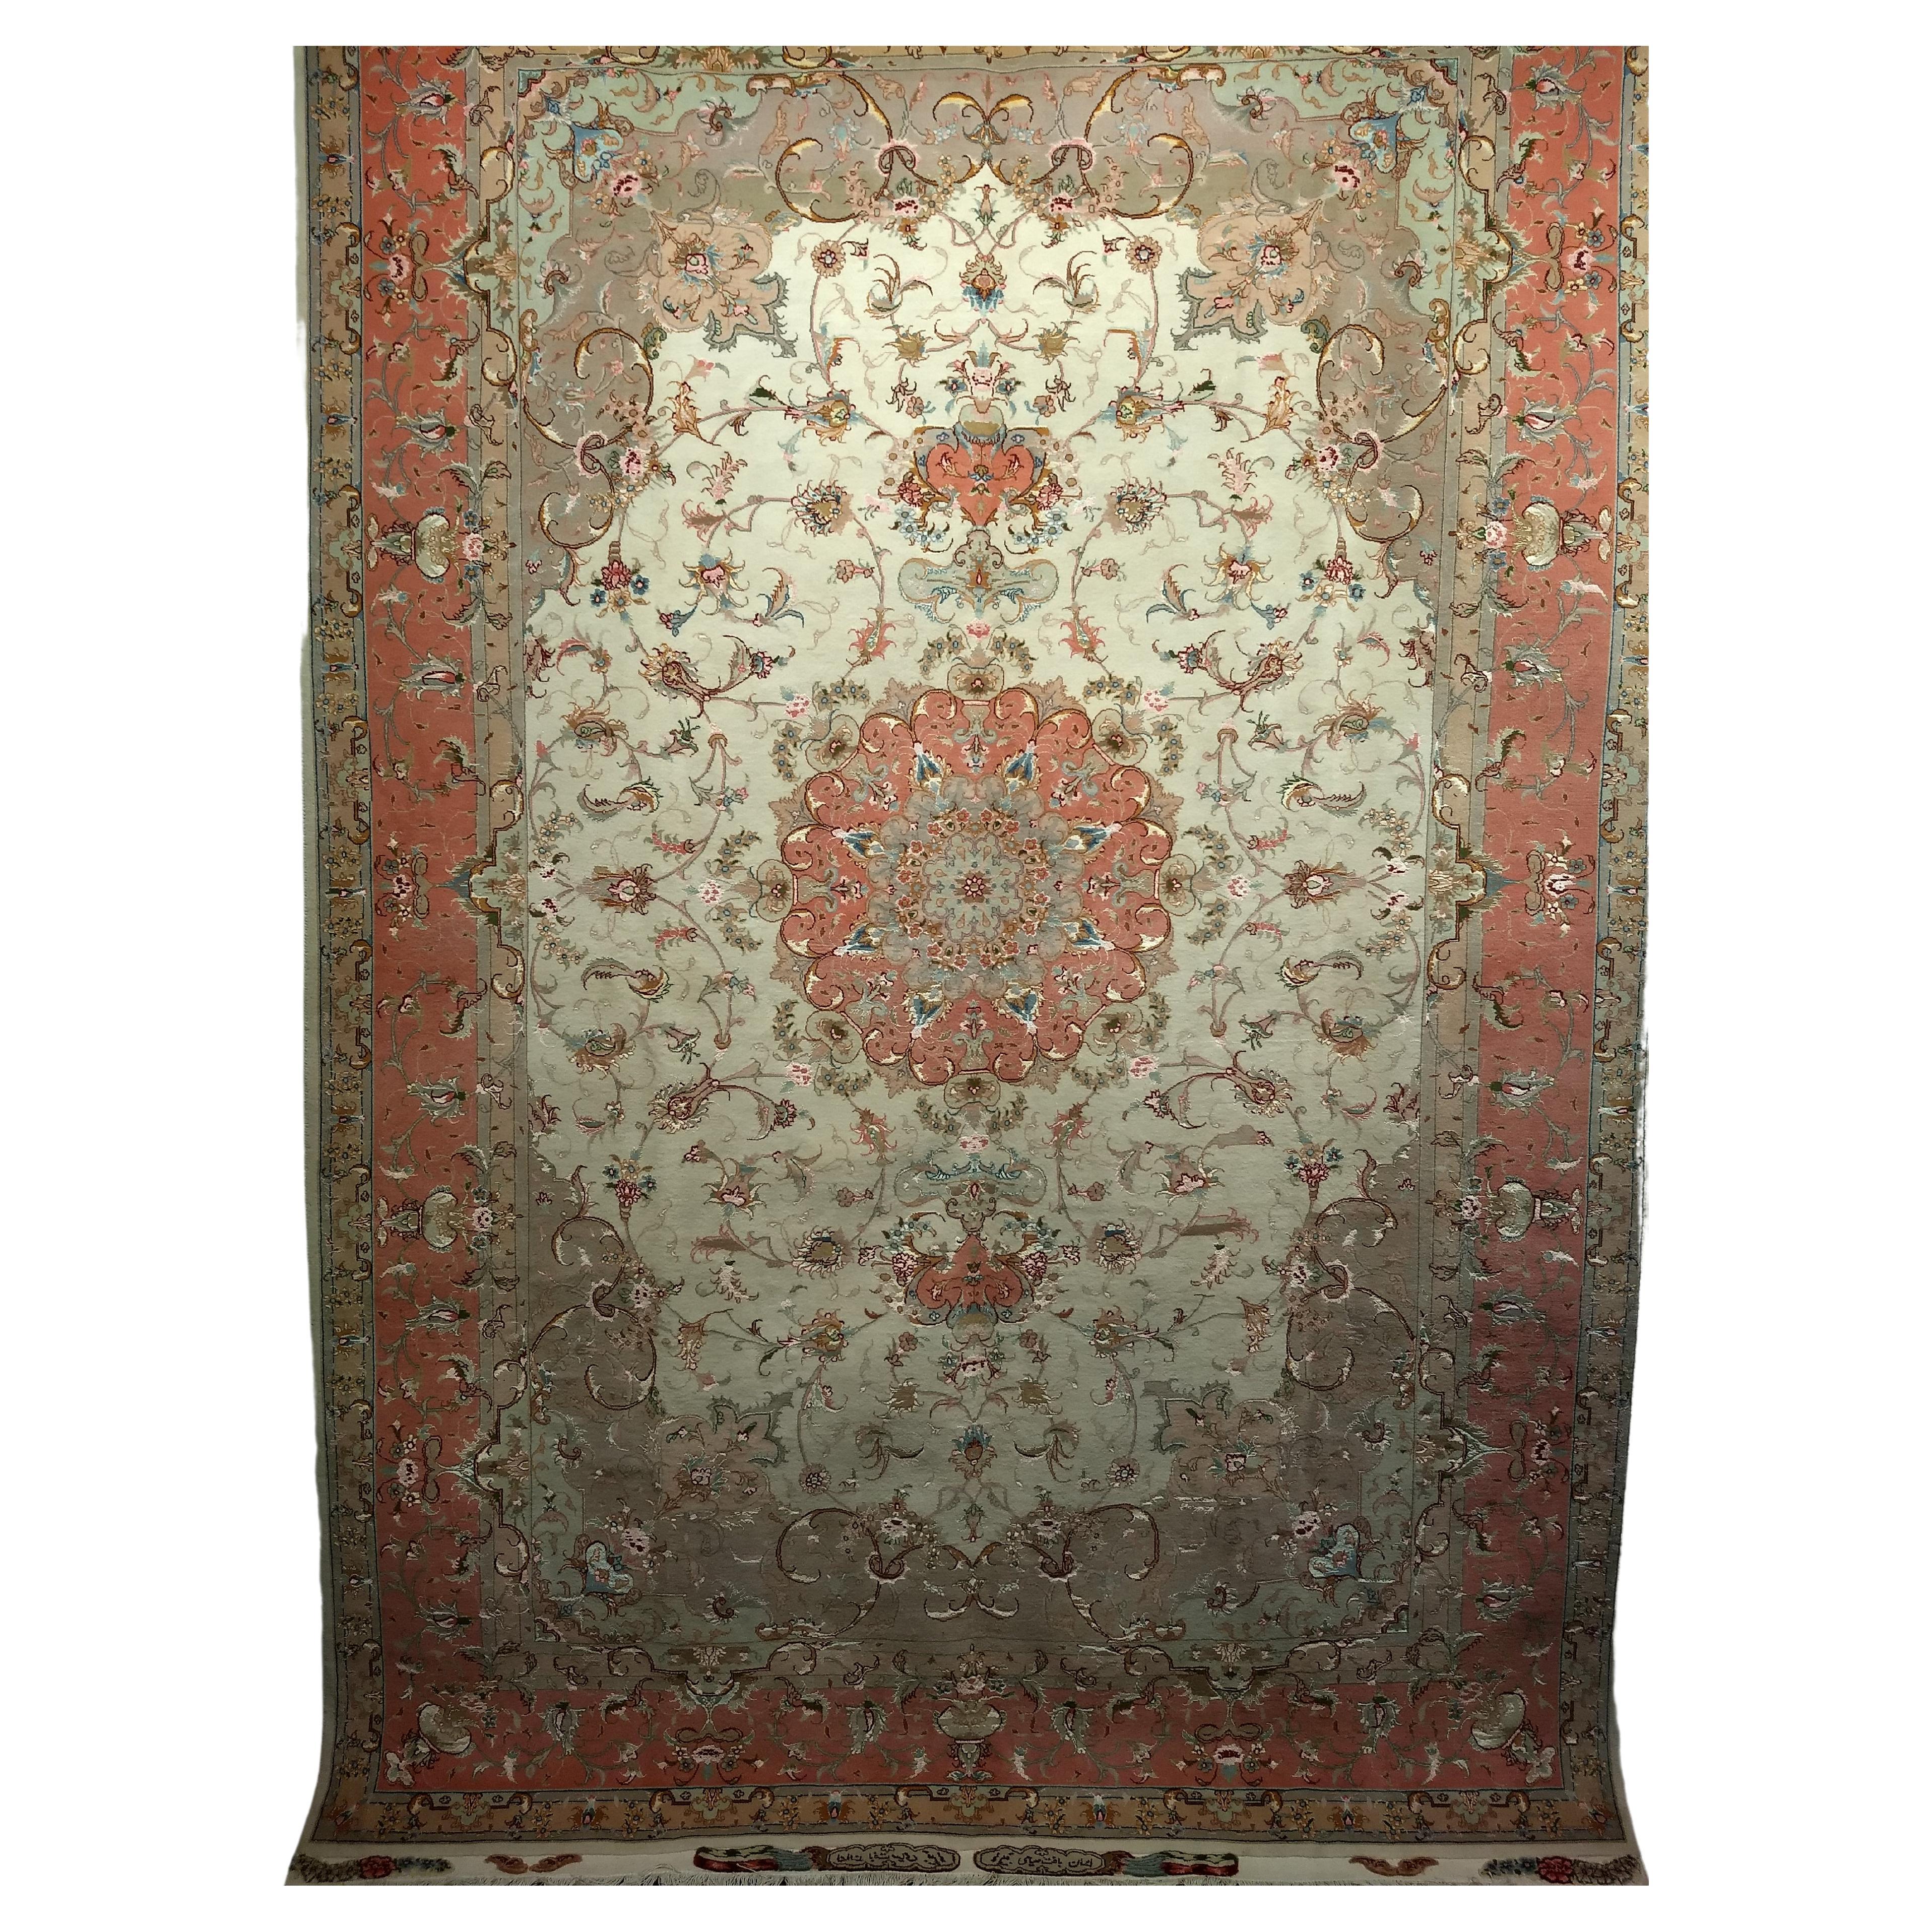 Fein gewebter persischer Täbris-Teppich in Zimmergröße mit Blumenmuster in Elfenbein, Lachs